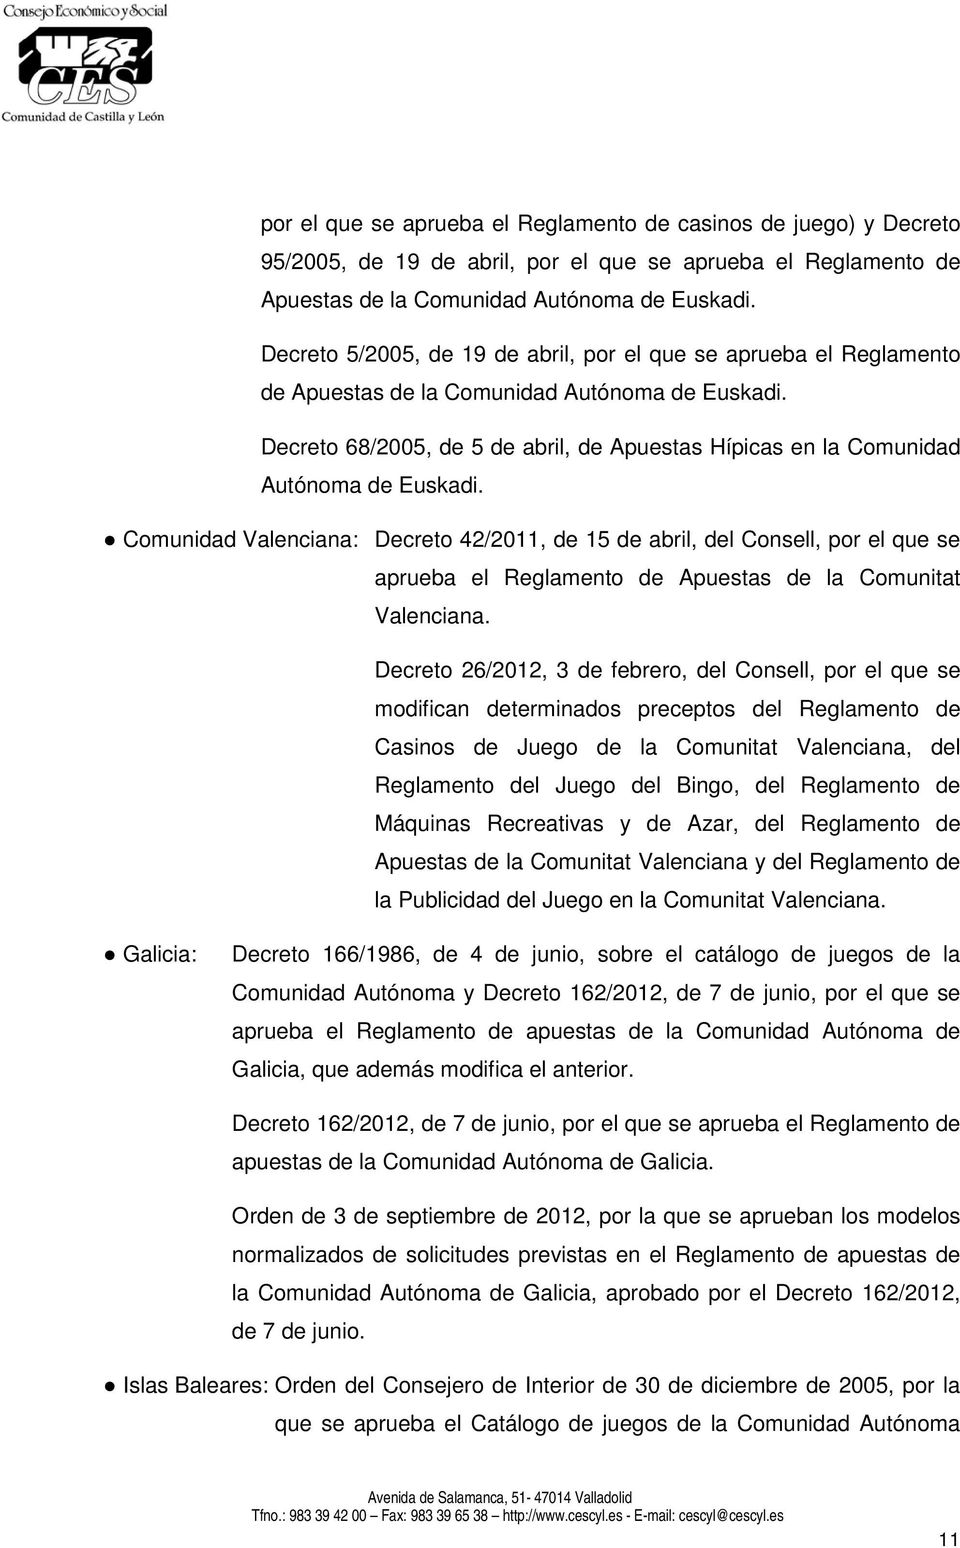 Decreto 68/2005, de 5 de abril, de Apuestas Hípicas en la Comunidad Autónoma de Euskadi.